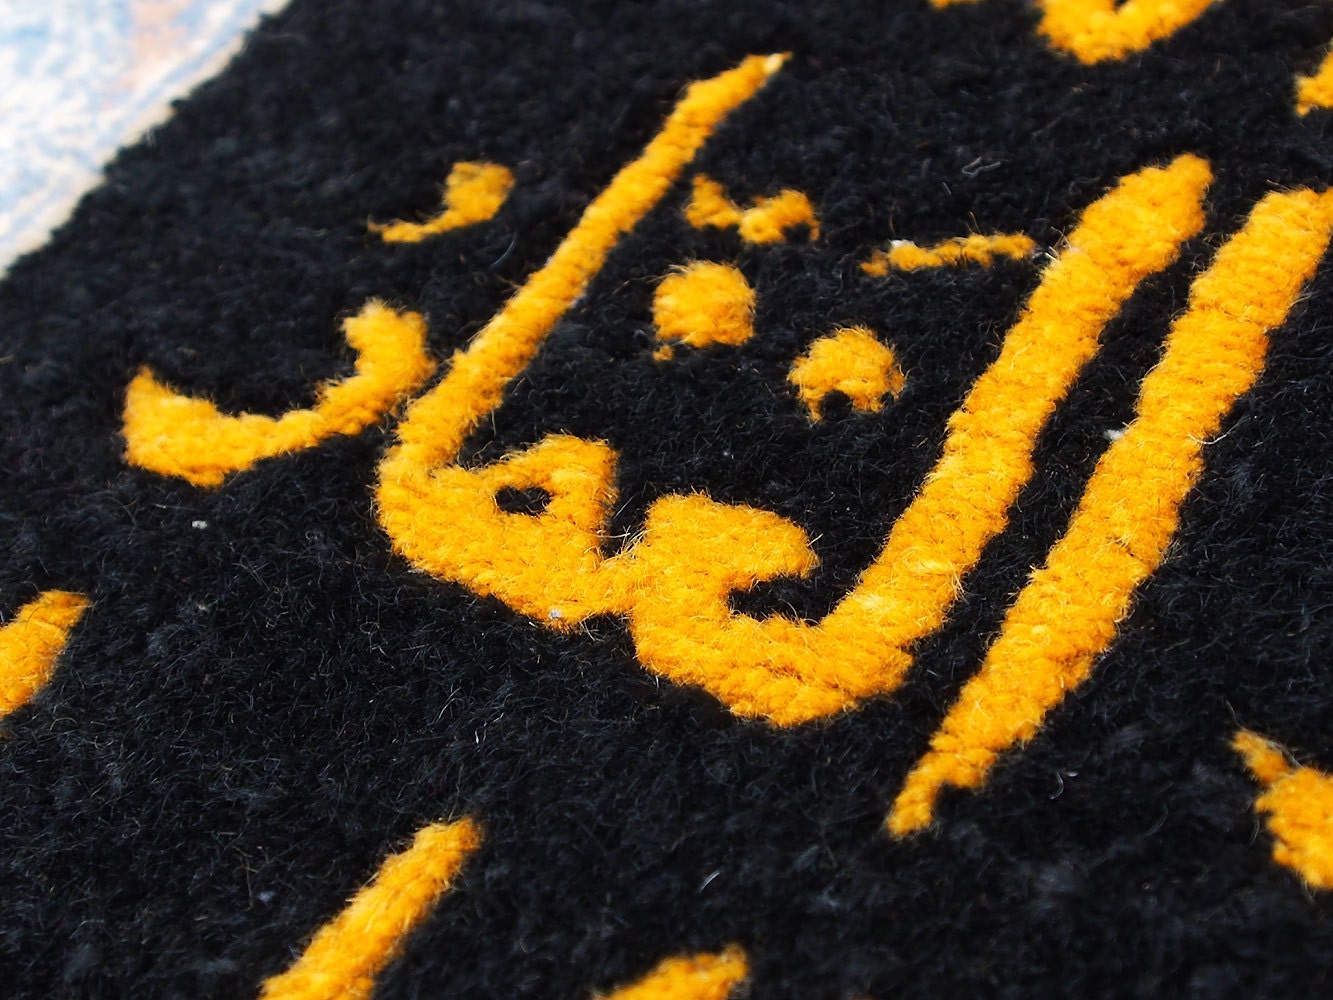 163x 103 cm sehr Seltener islamische handgeknüpft orientteppich Gebetsteppich wandteppich mit 99 namen allahs  Orientsbazar   